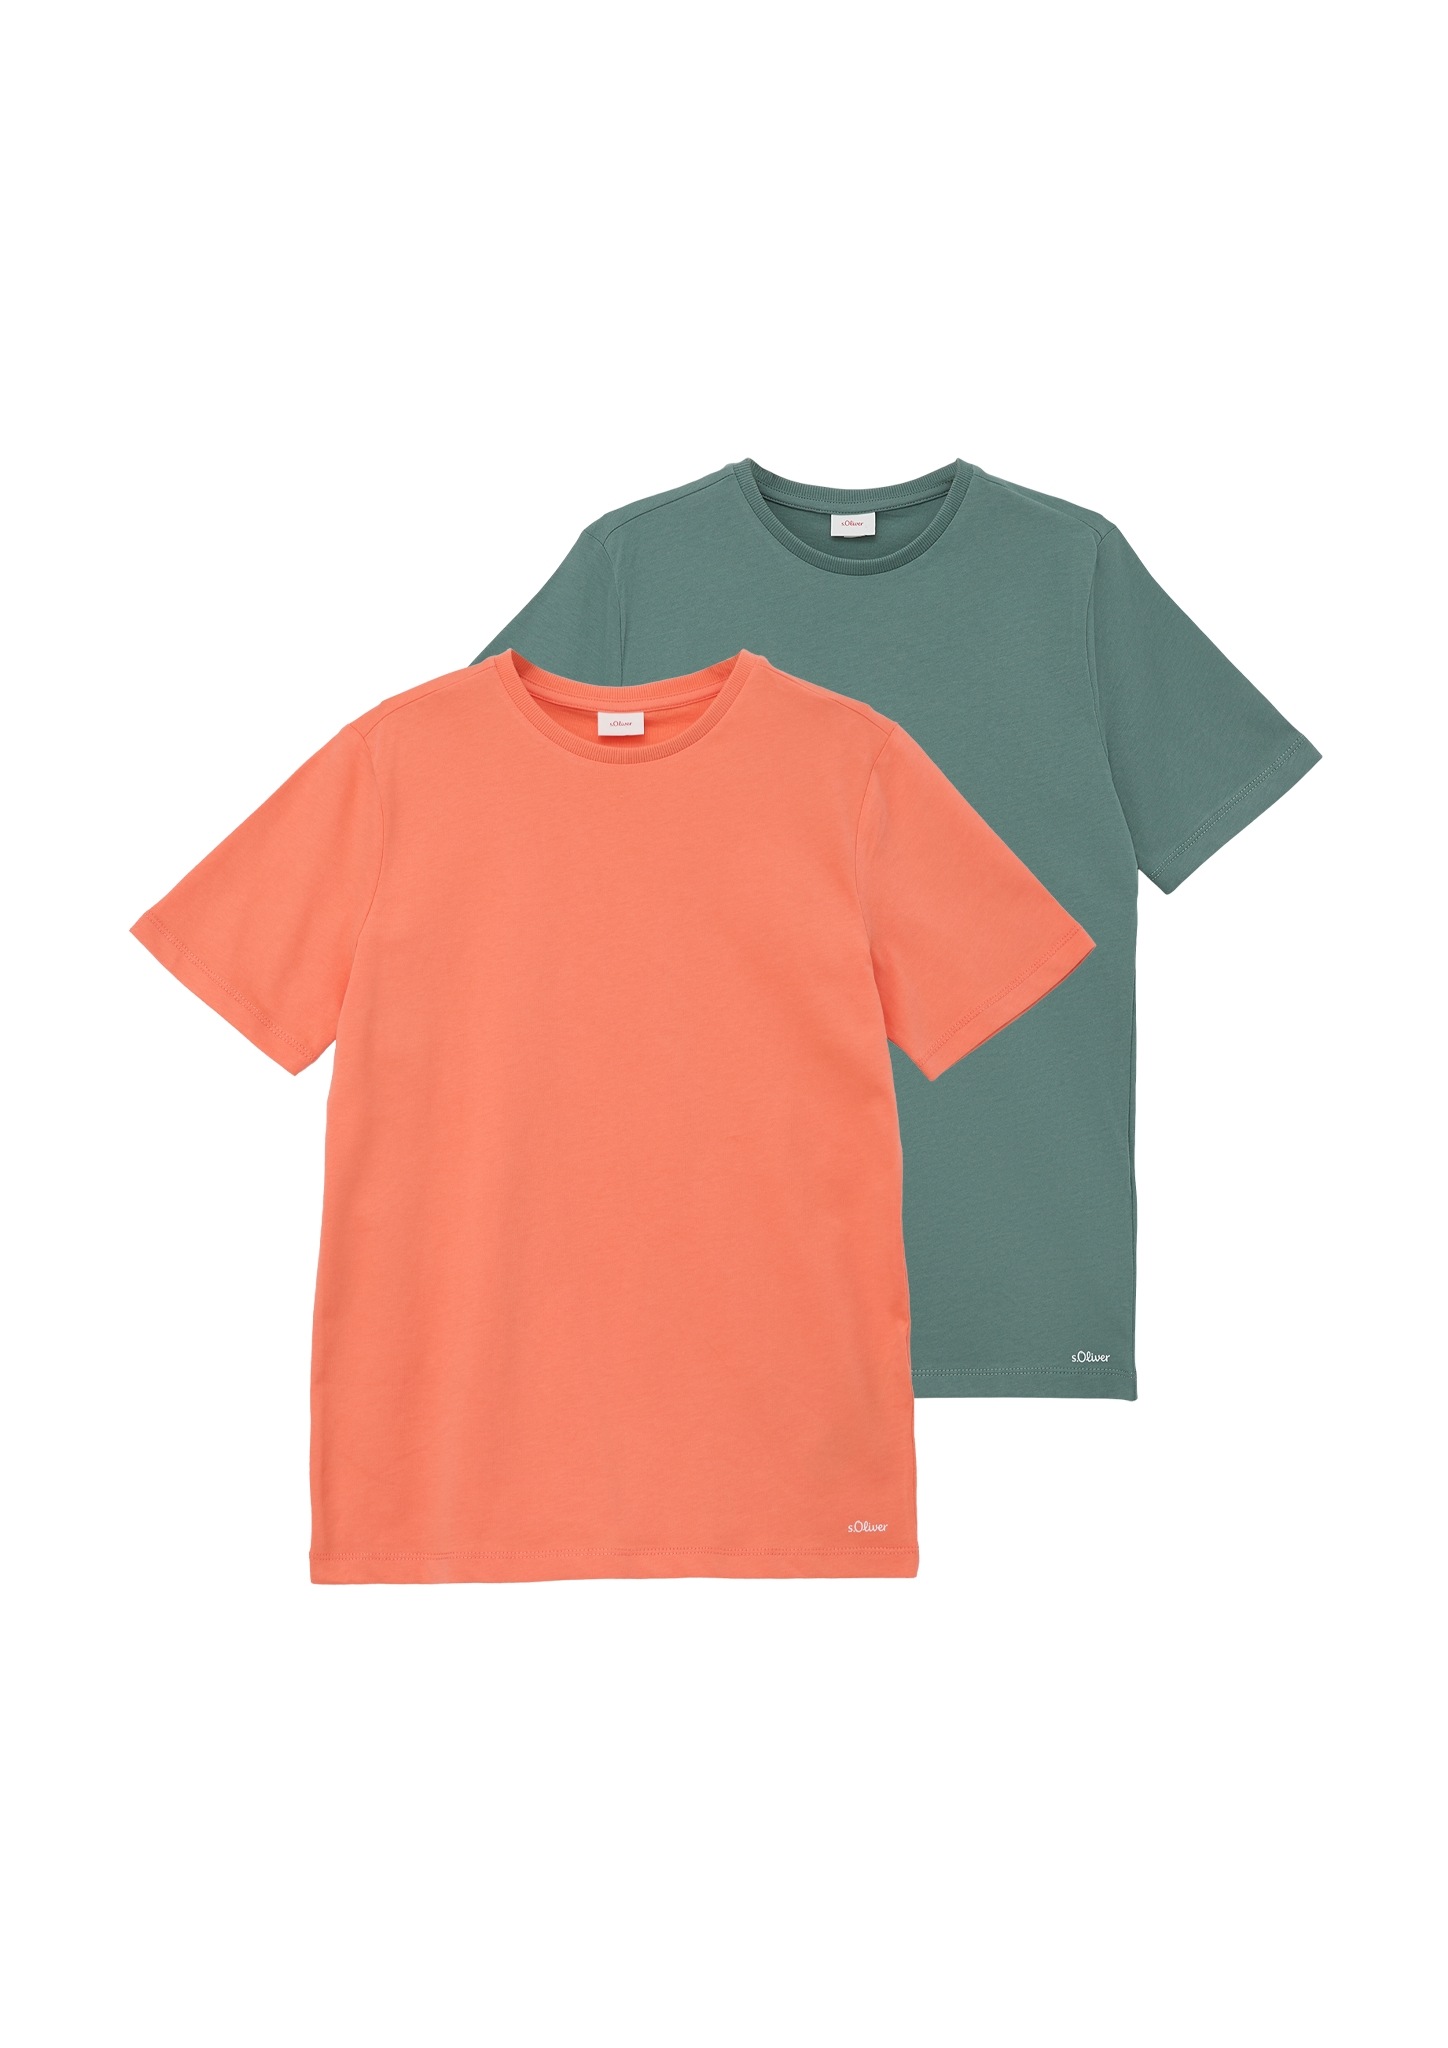 (2 OTTO T-Shirt, Junior Jungs kaufen bei für tlg.), s.Oliver